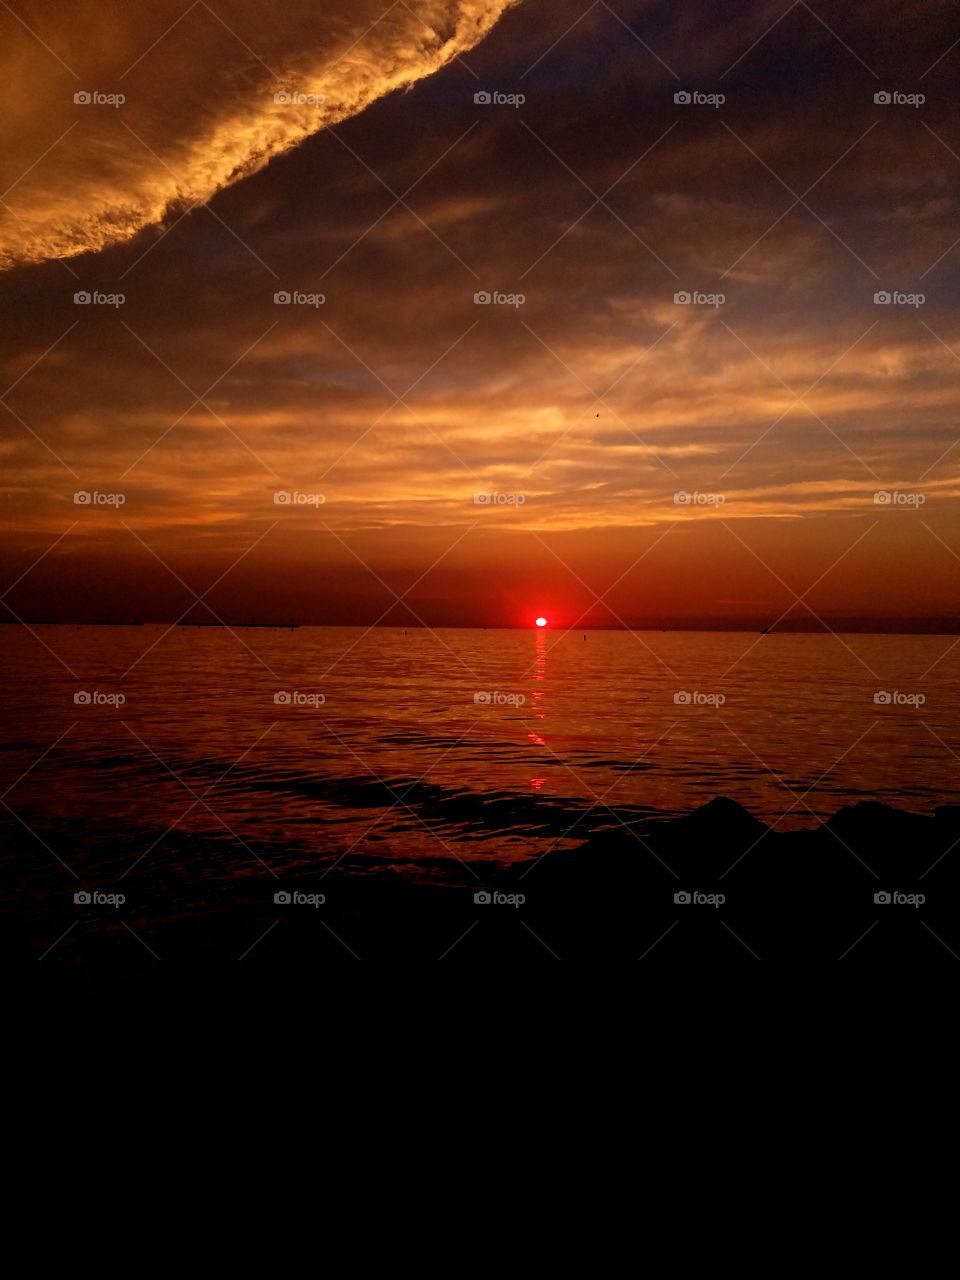 A beautiful sunset on the lake